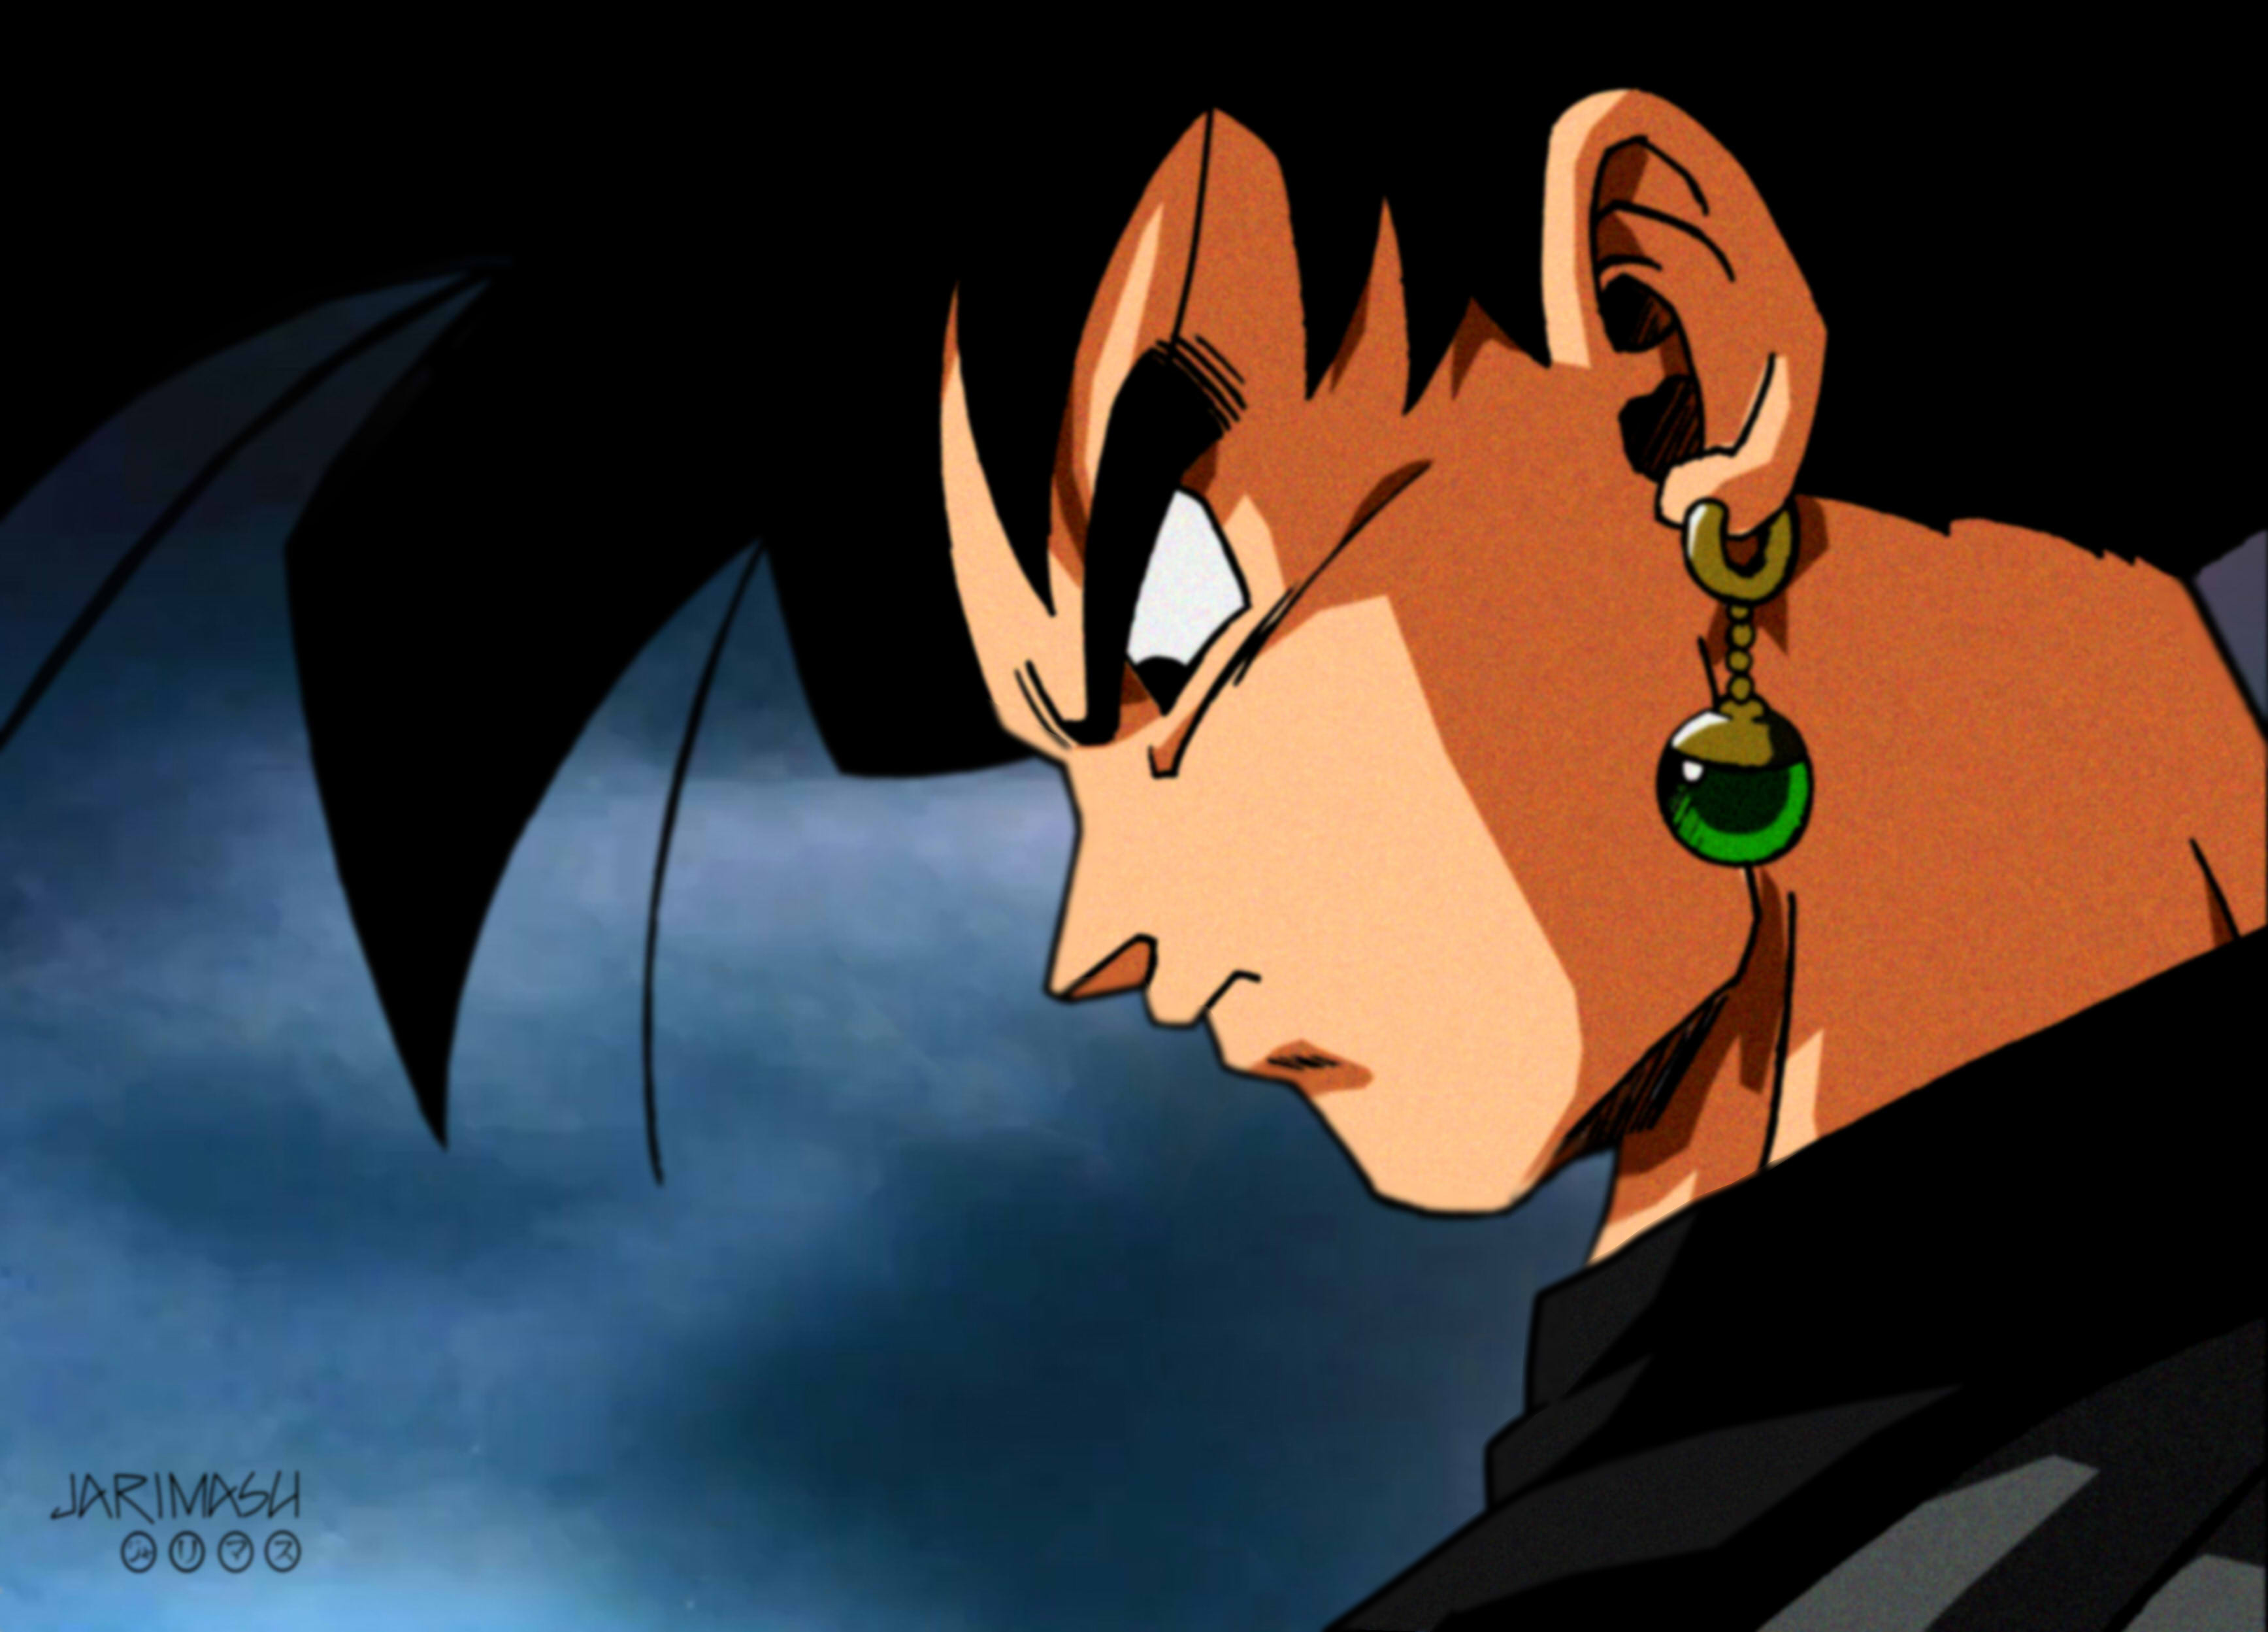 Finalmente Black aparece frente a Goku y Vegeta by jarimasu on DeviantArt